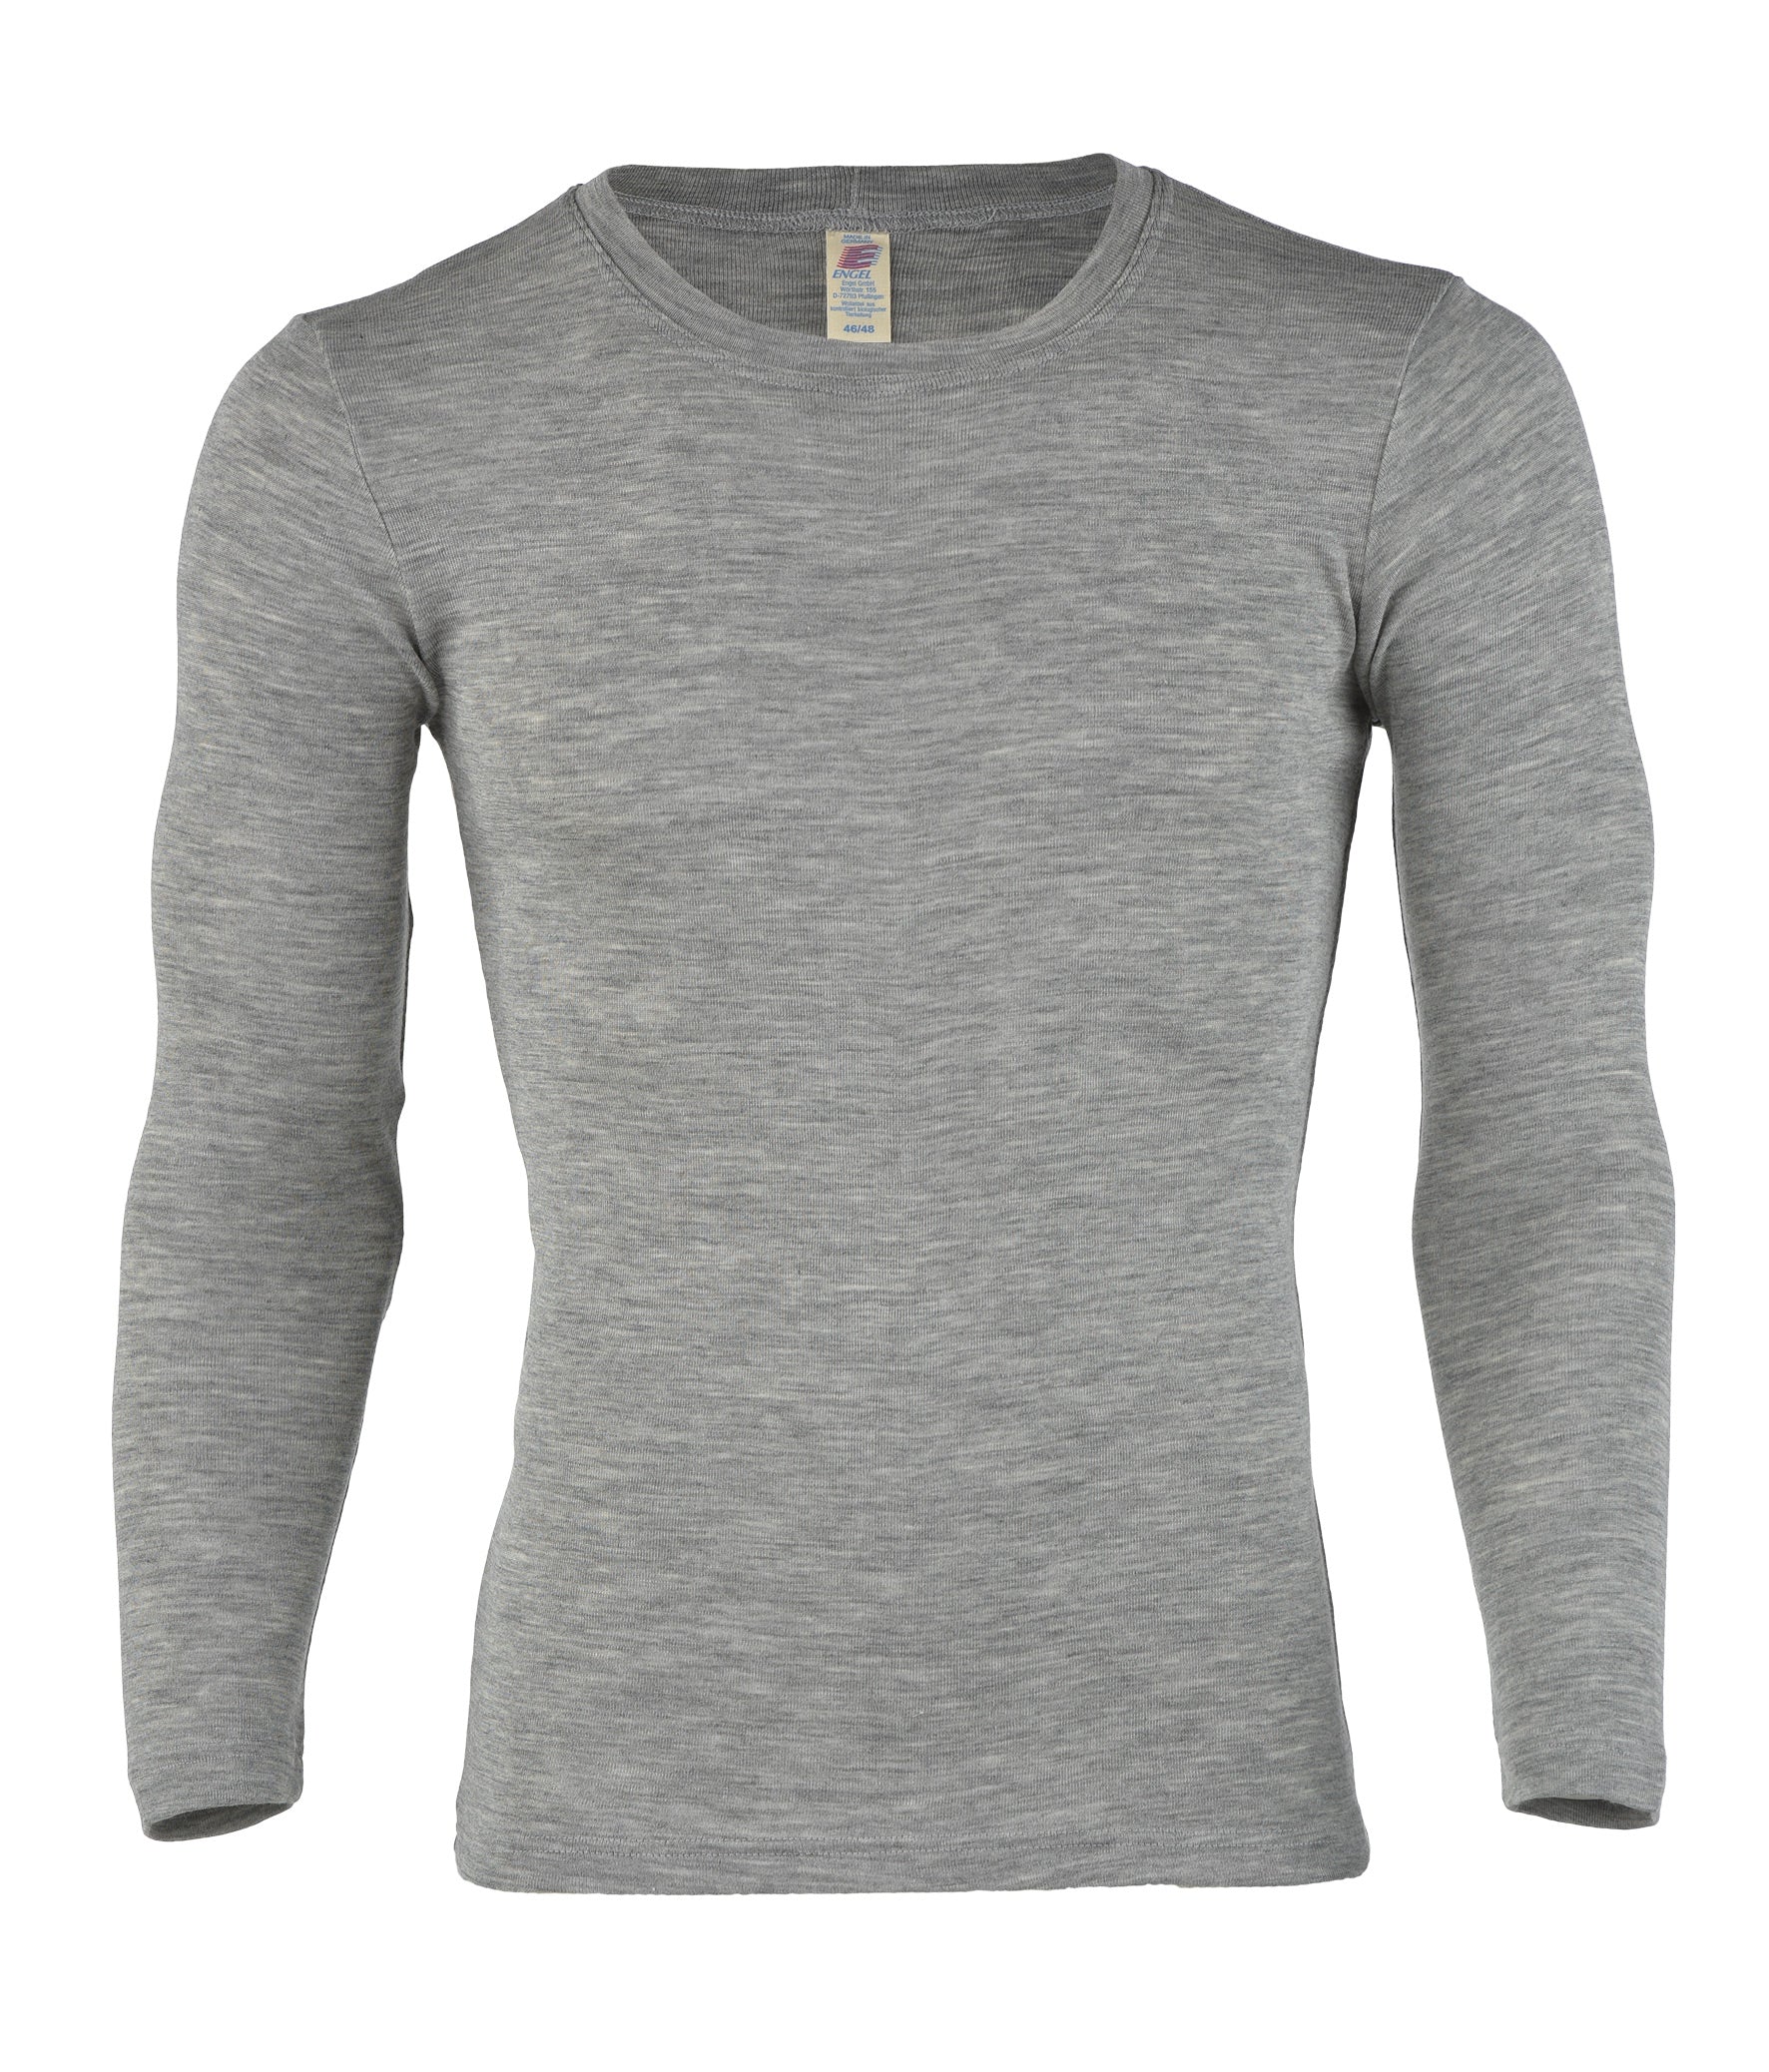 Gæstfrihed pensum salvie ENGEL Organic Merino Wool Shirts - Women's and Men's - Long Sleeve - YOOKI